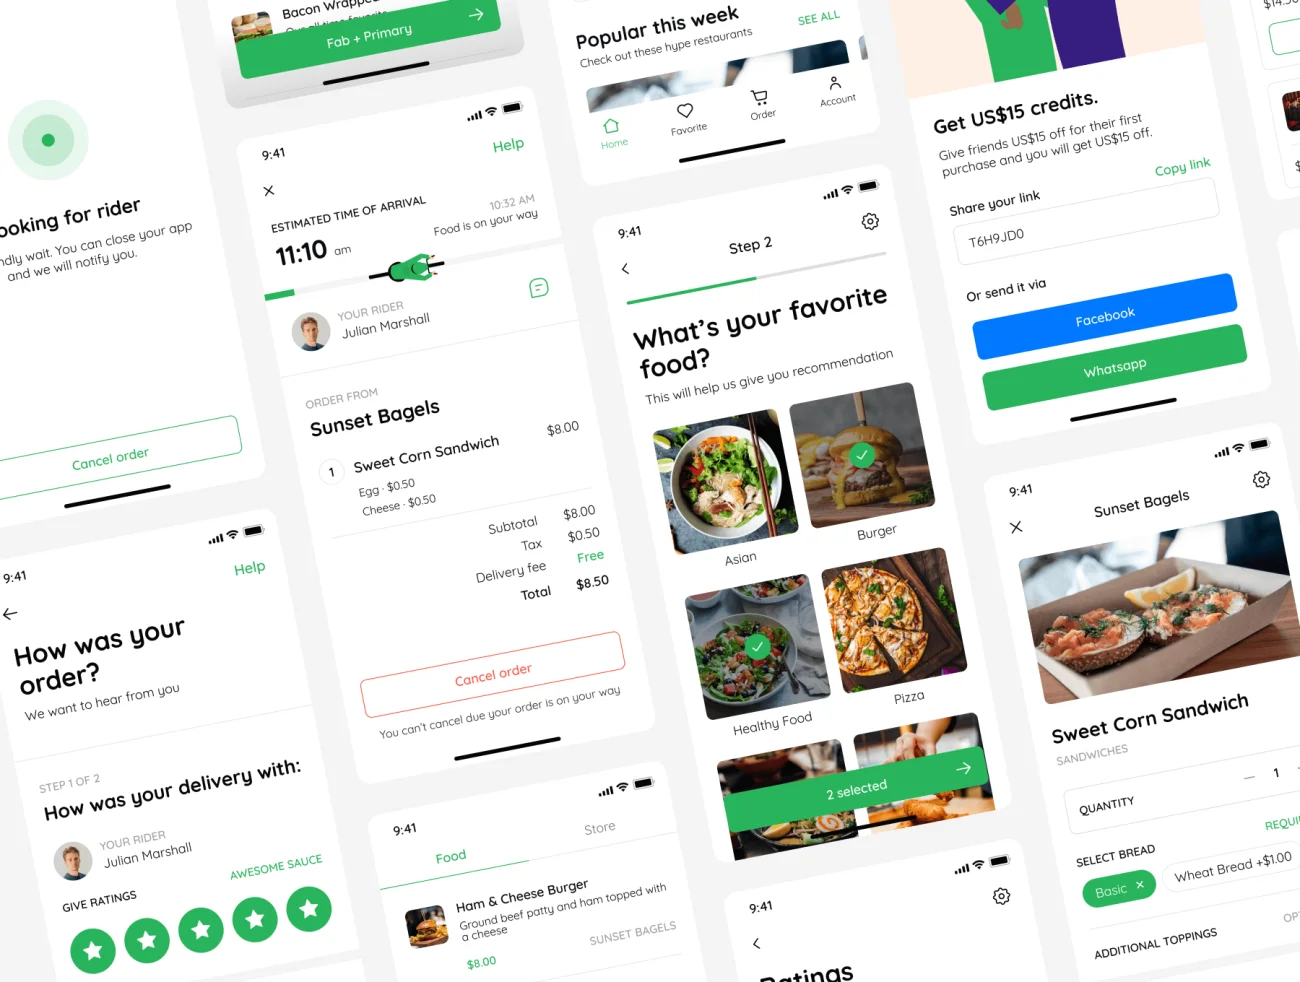 40屏食品餐馆在线点餐应用设计套件素材下载 Foodie – Food Restaurant Delivery Mobile UI Kit .figma-UI/UX、ui套件、主页、付款、列表、应用、支付、表单、详情-到位啦UI